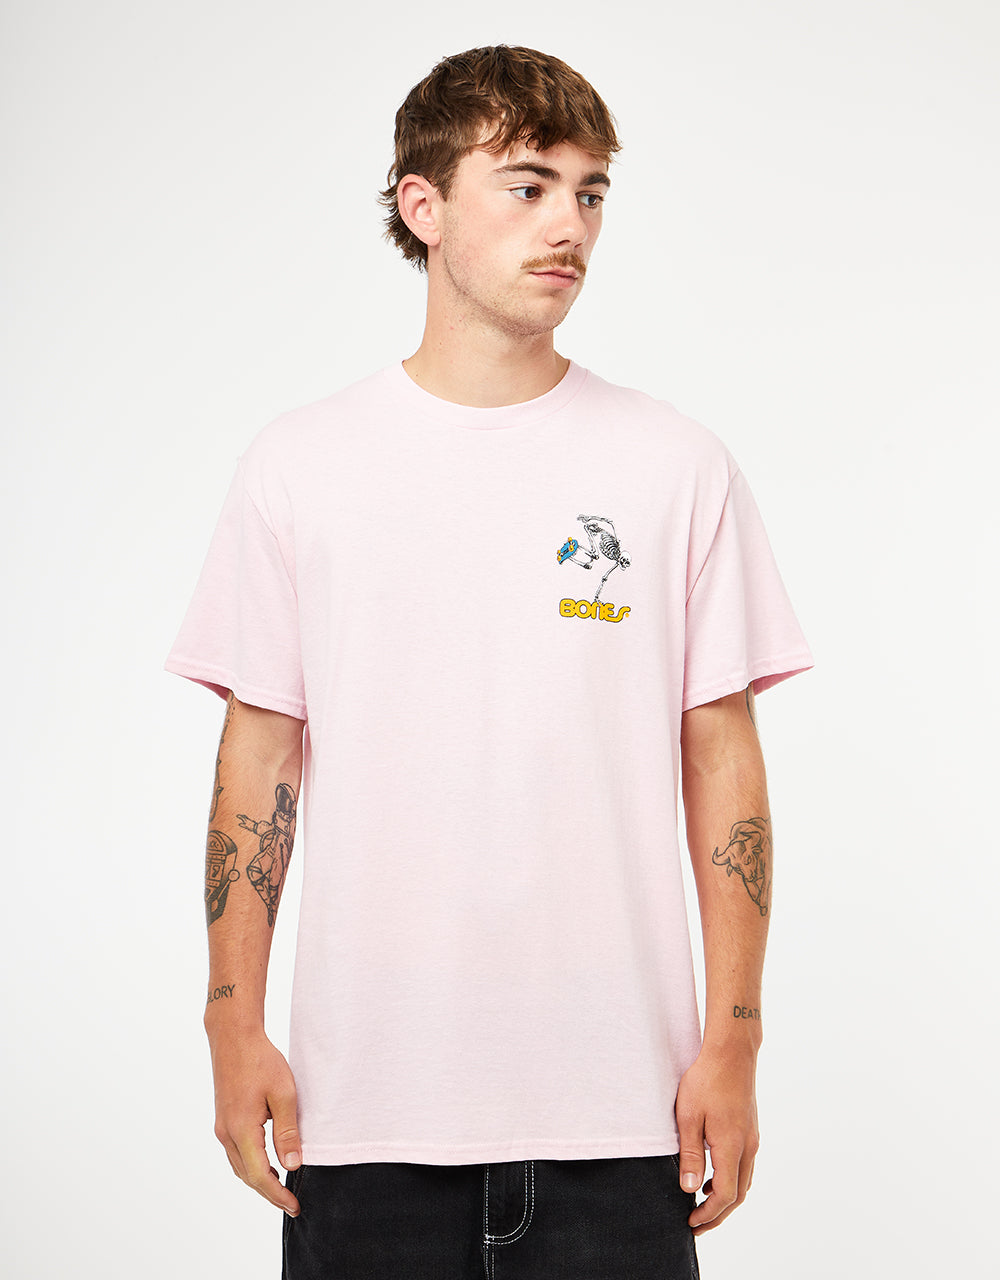 Powell Peralta Skate Skeleton T-Shirt - Light Pink